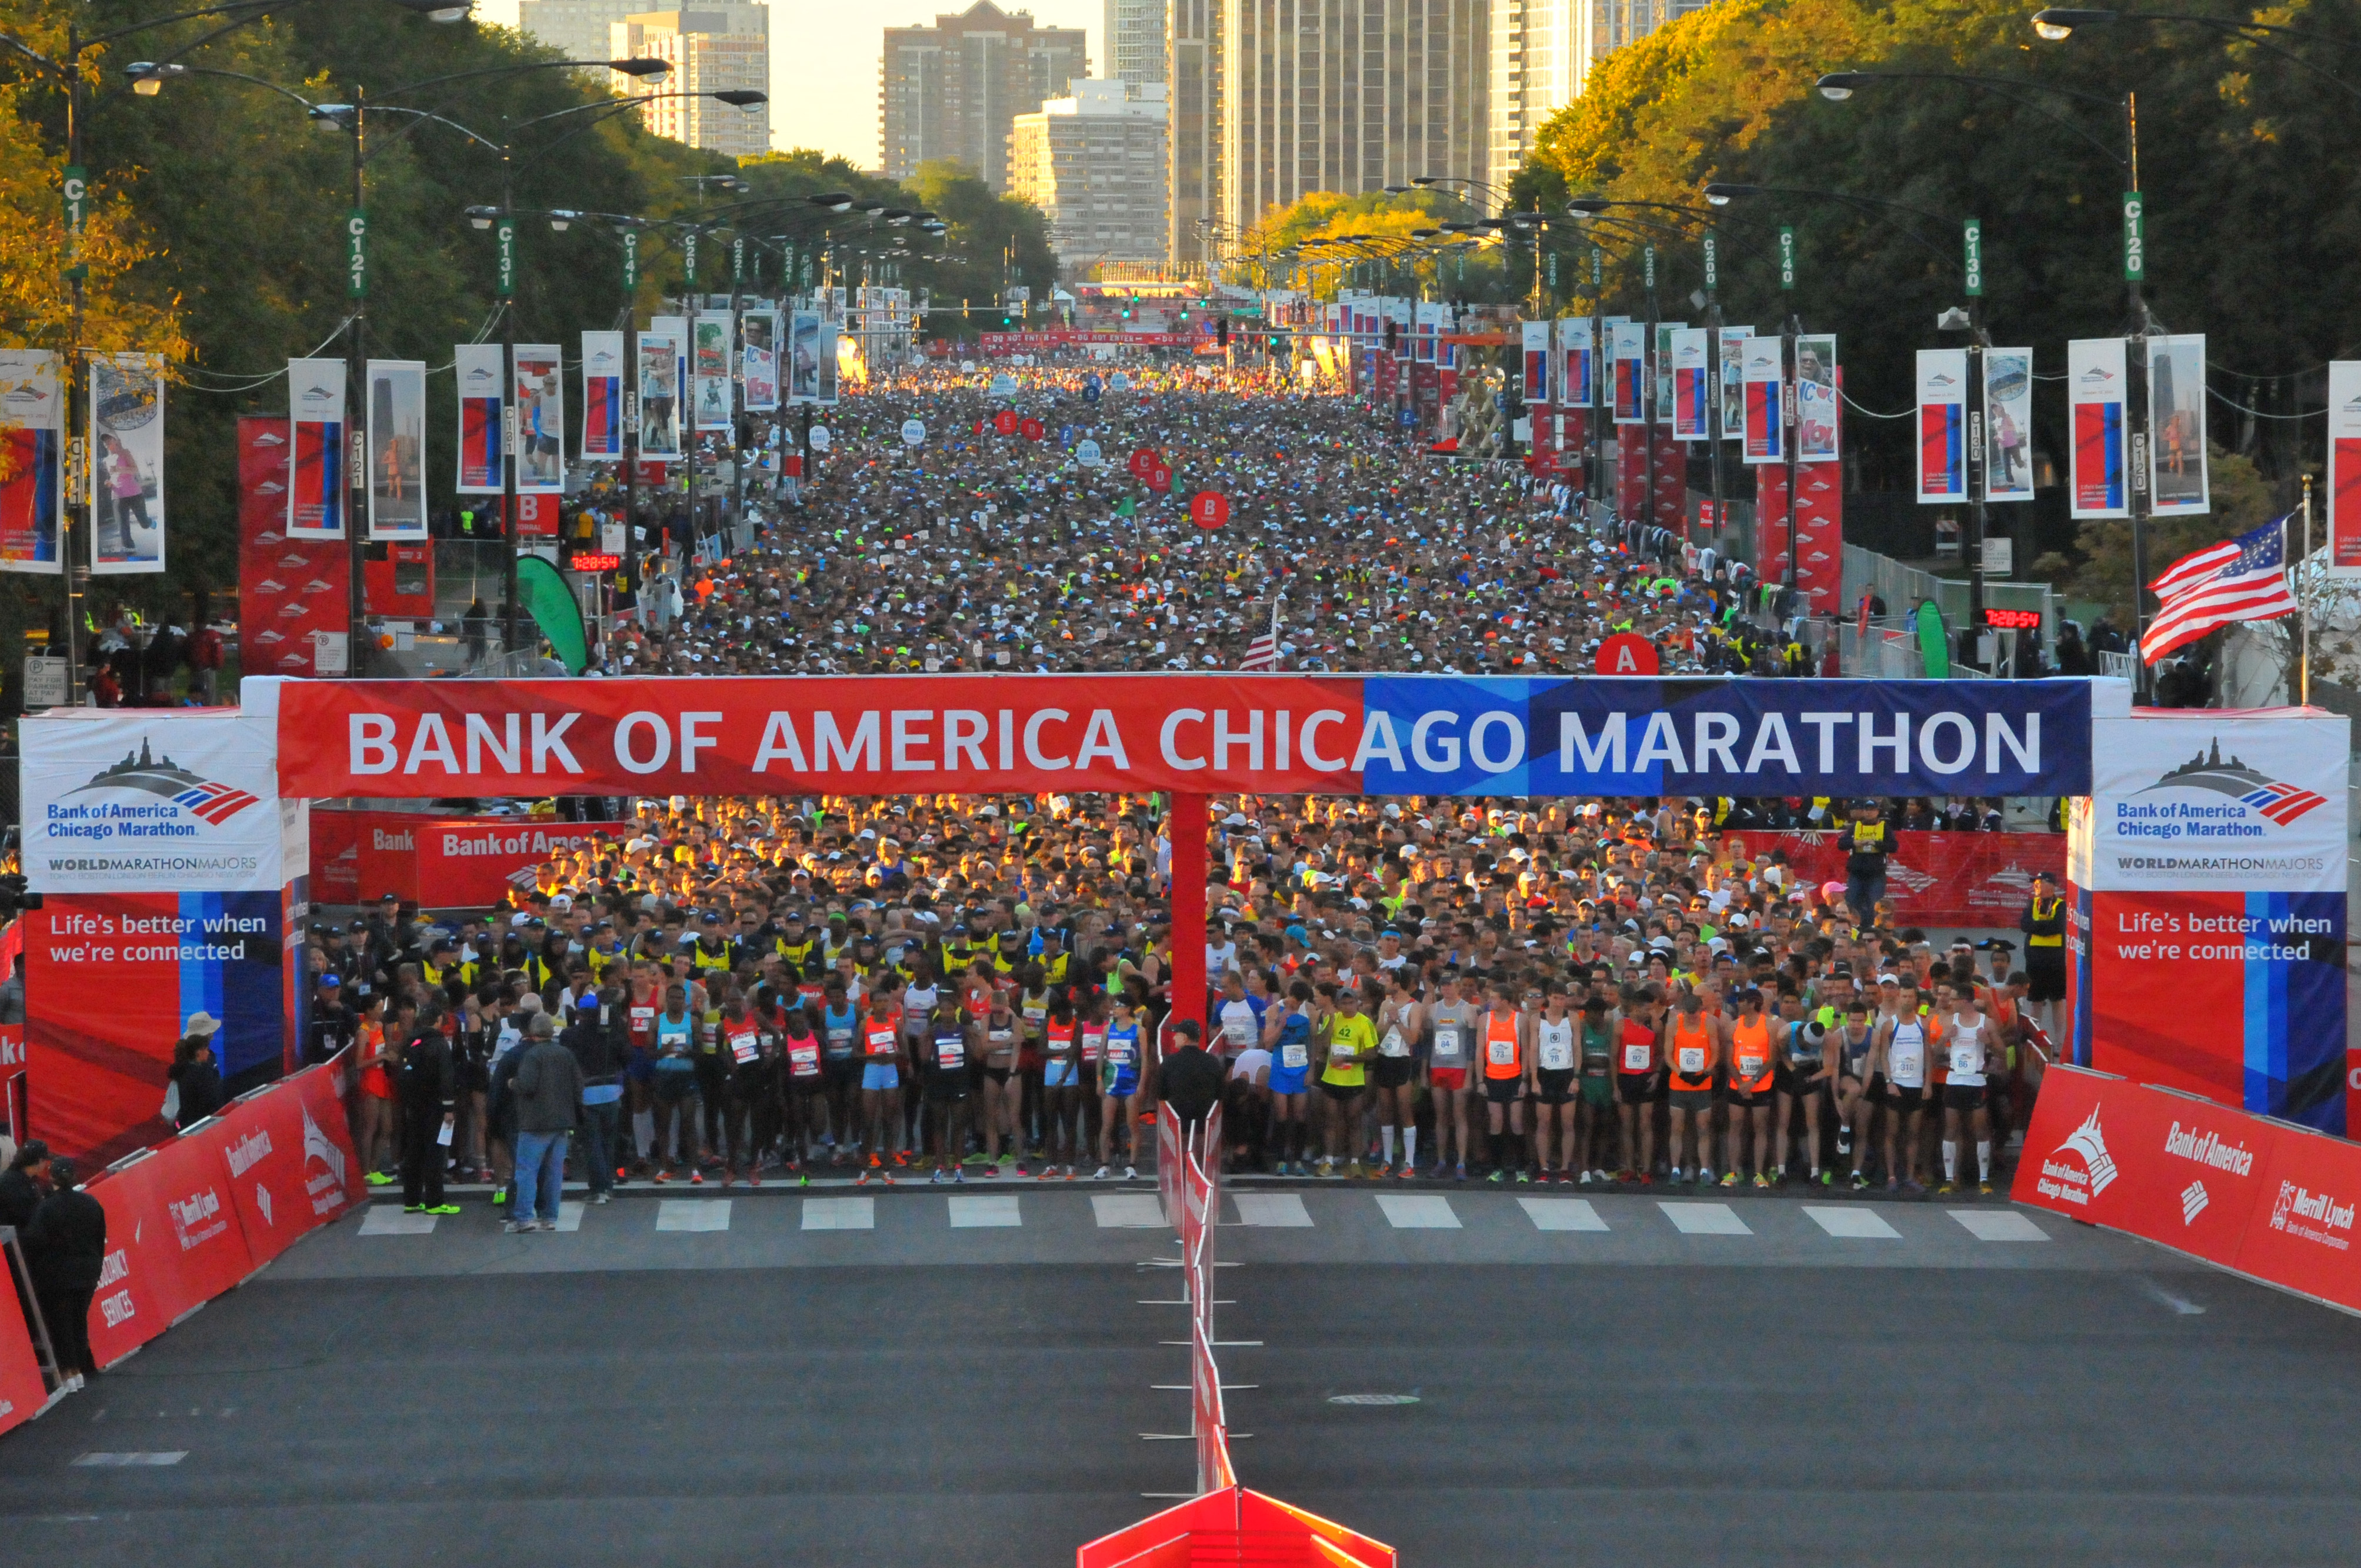 Chicago Marathon Spectators’ Guide